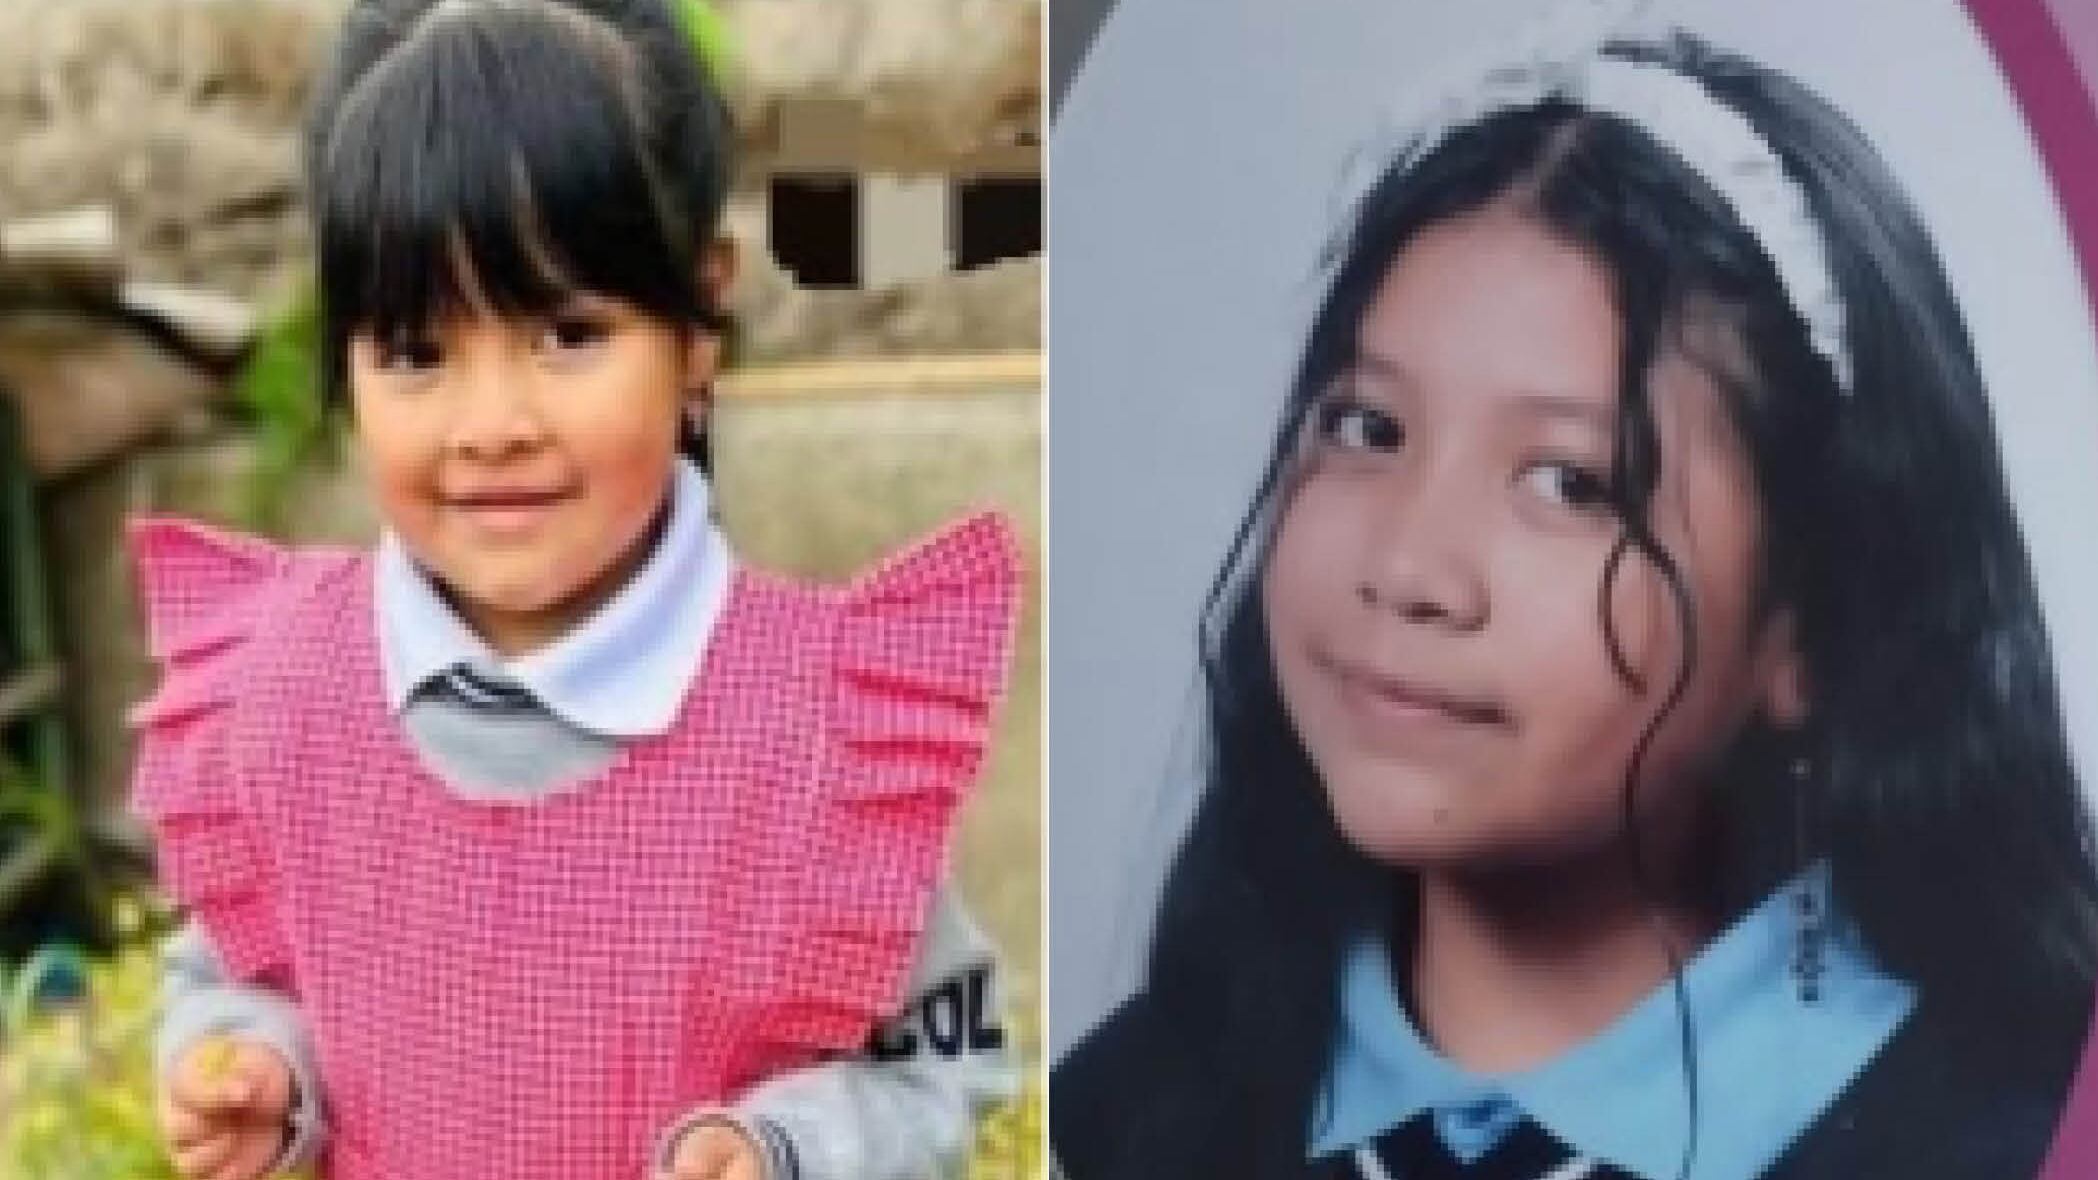 Activan ‘Alerta Emilia’ por la desaparición de las menores Briana y Génesis Campo Villarreal